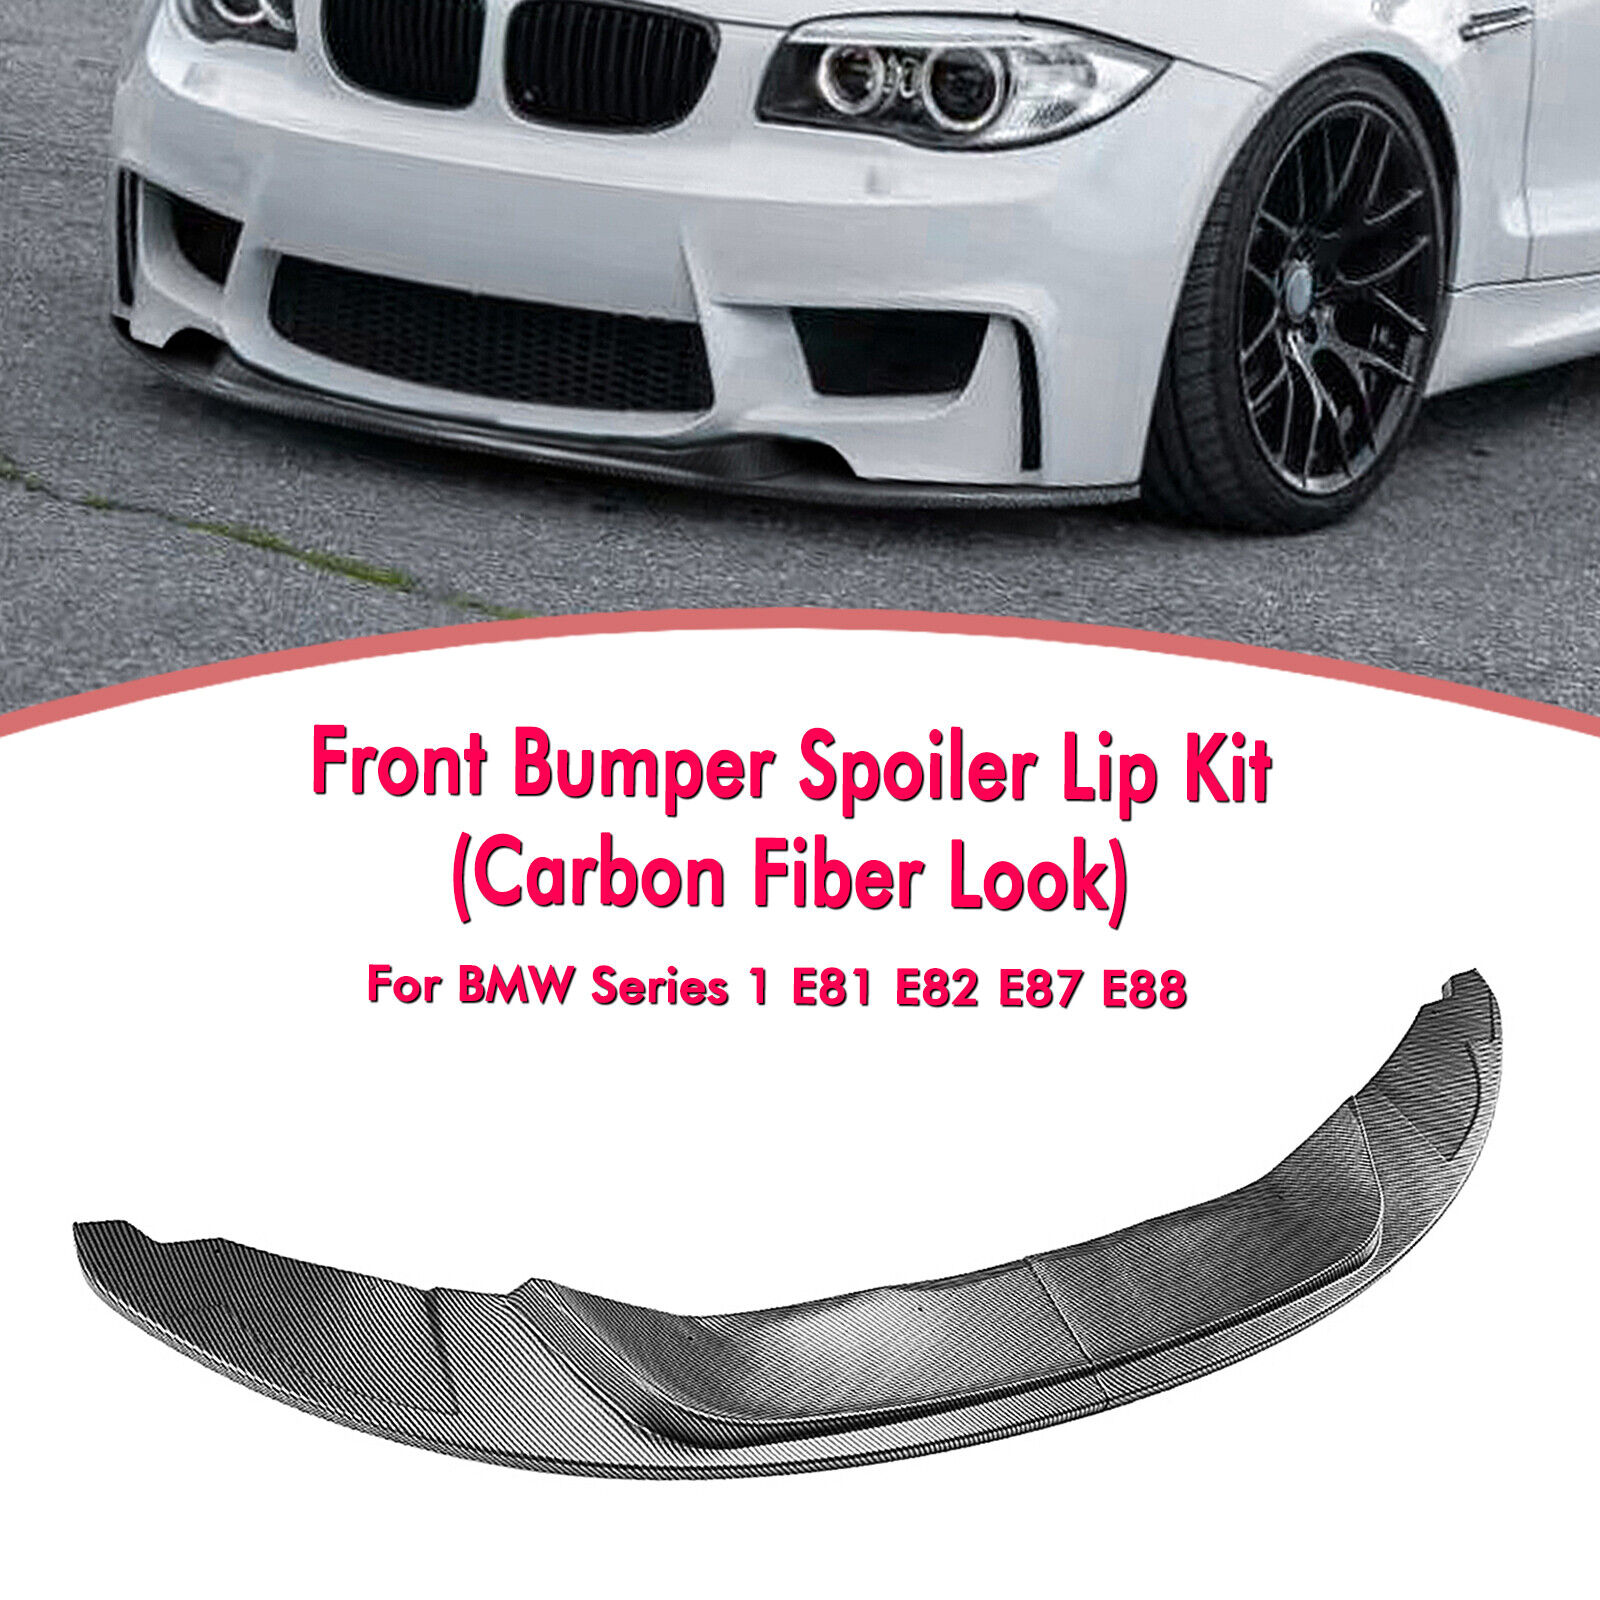 Front Bumper Splitter Spoiler Lip For BMW 1 Series E81 E82 E87 E88 1M 2004-2013